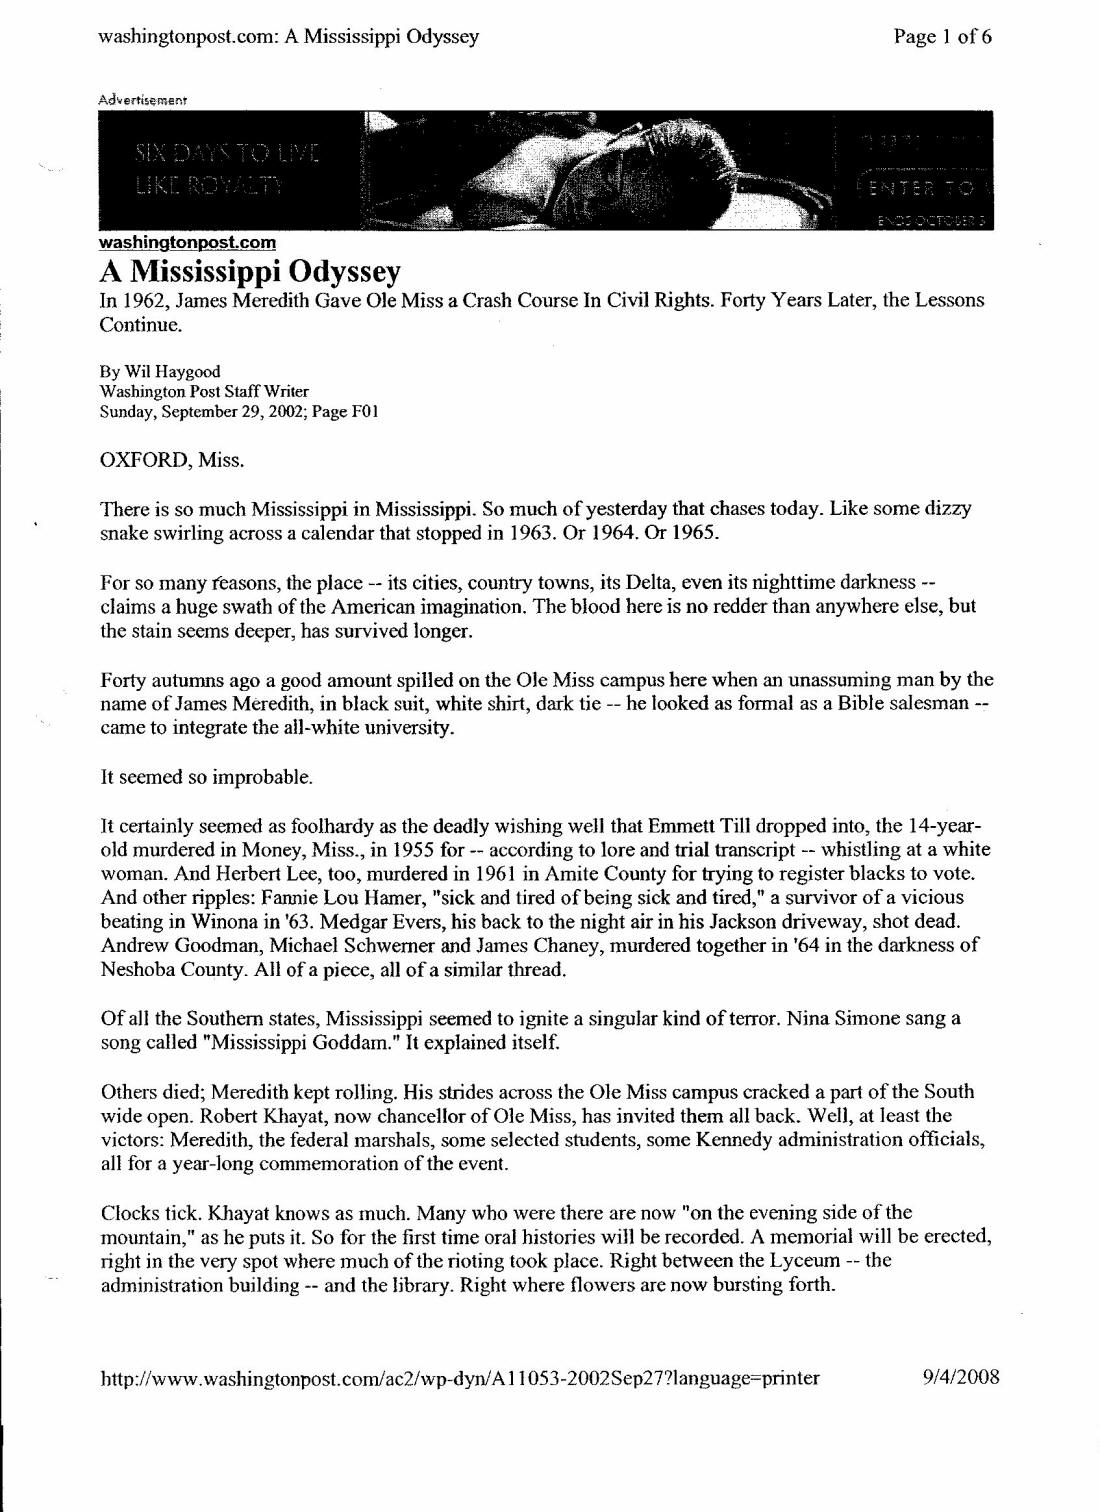 Washington Post - Mississippi Odyssey